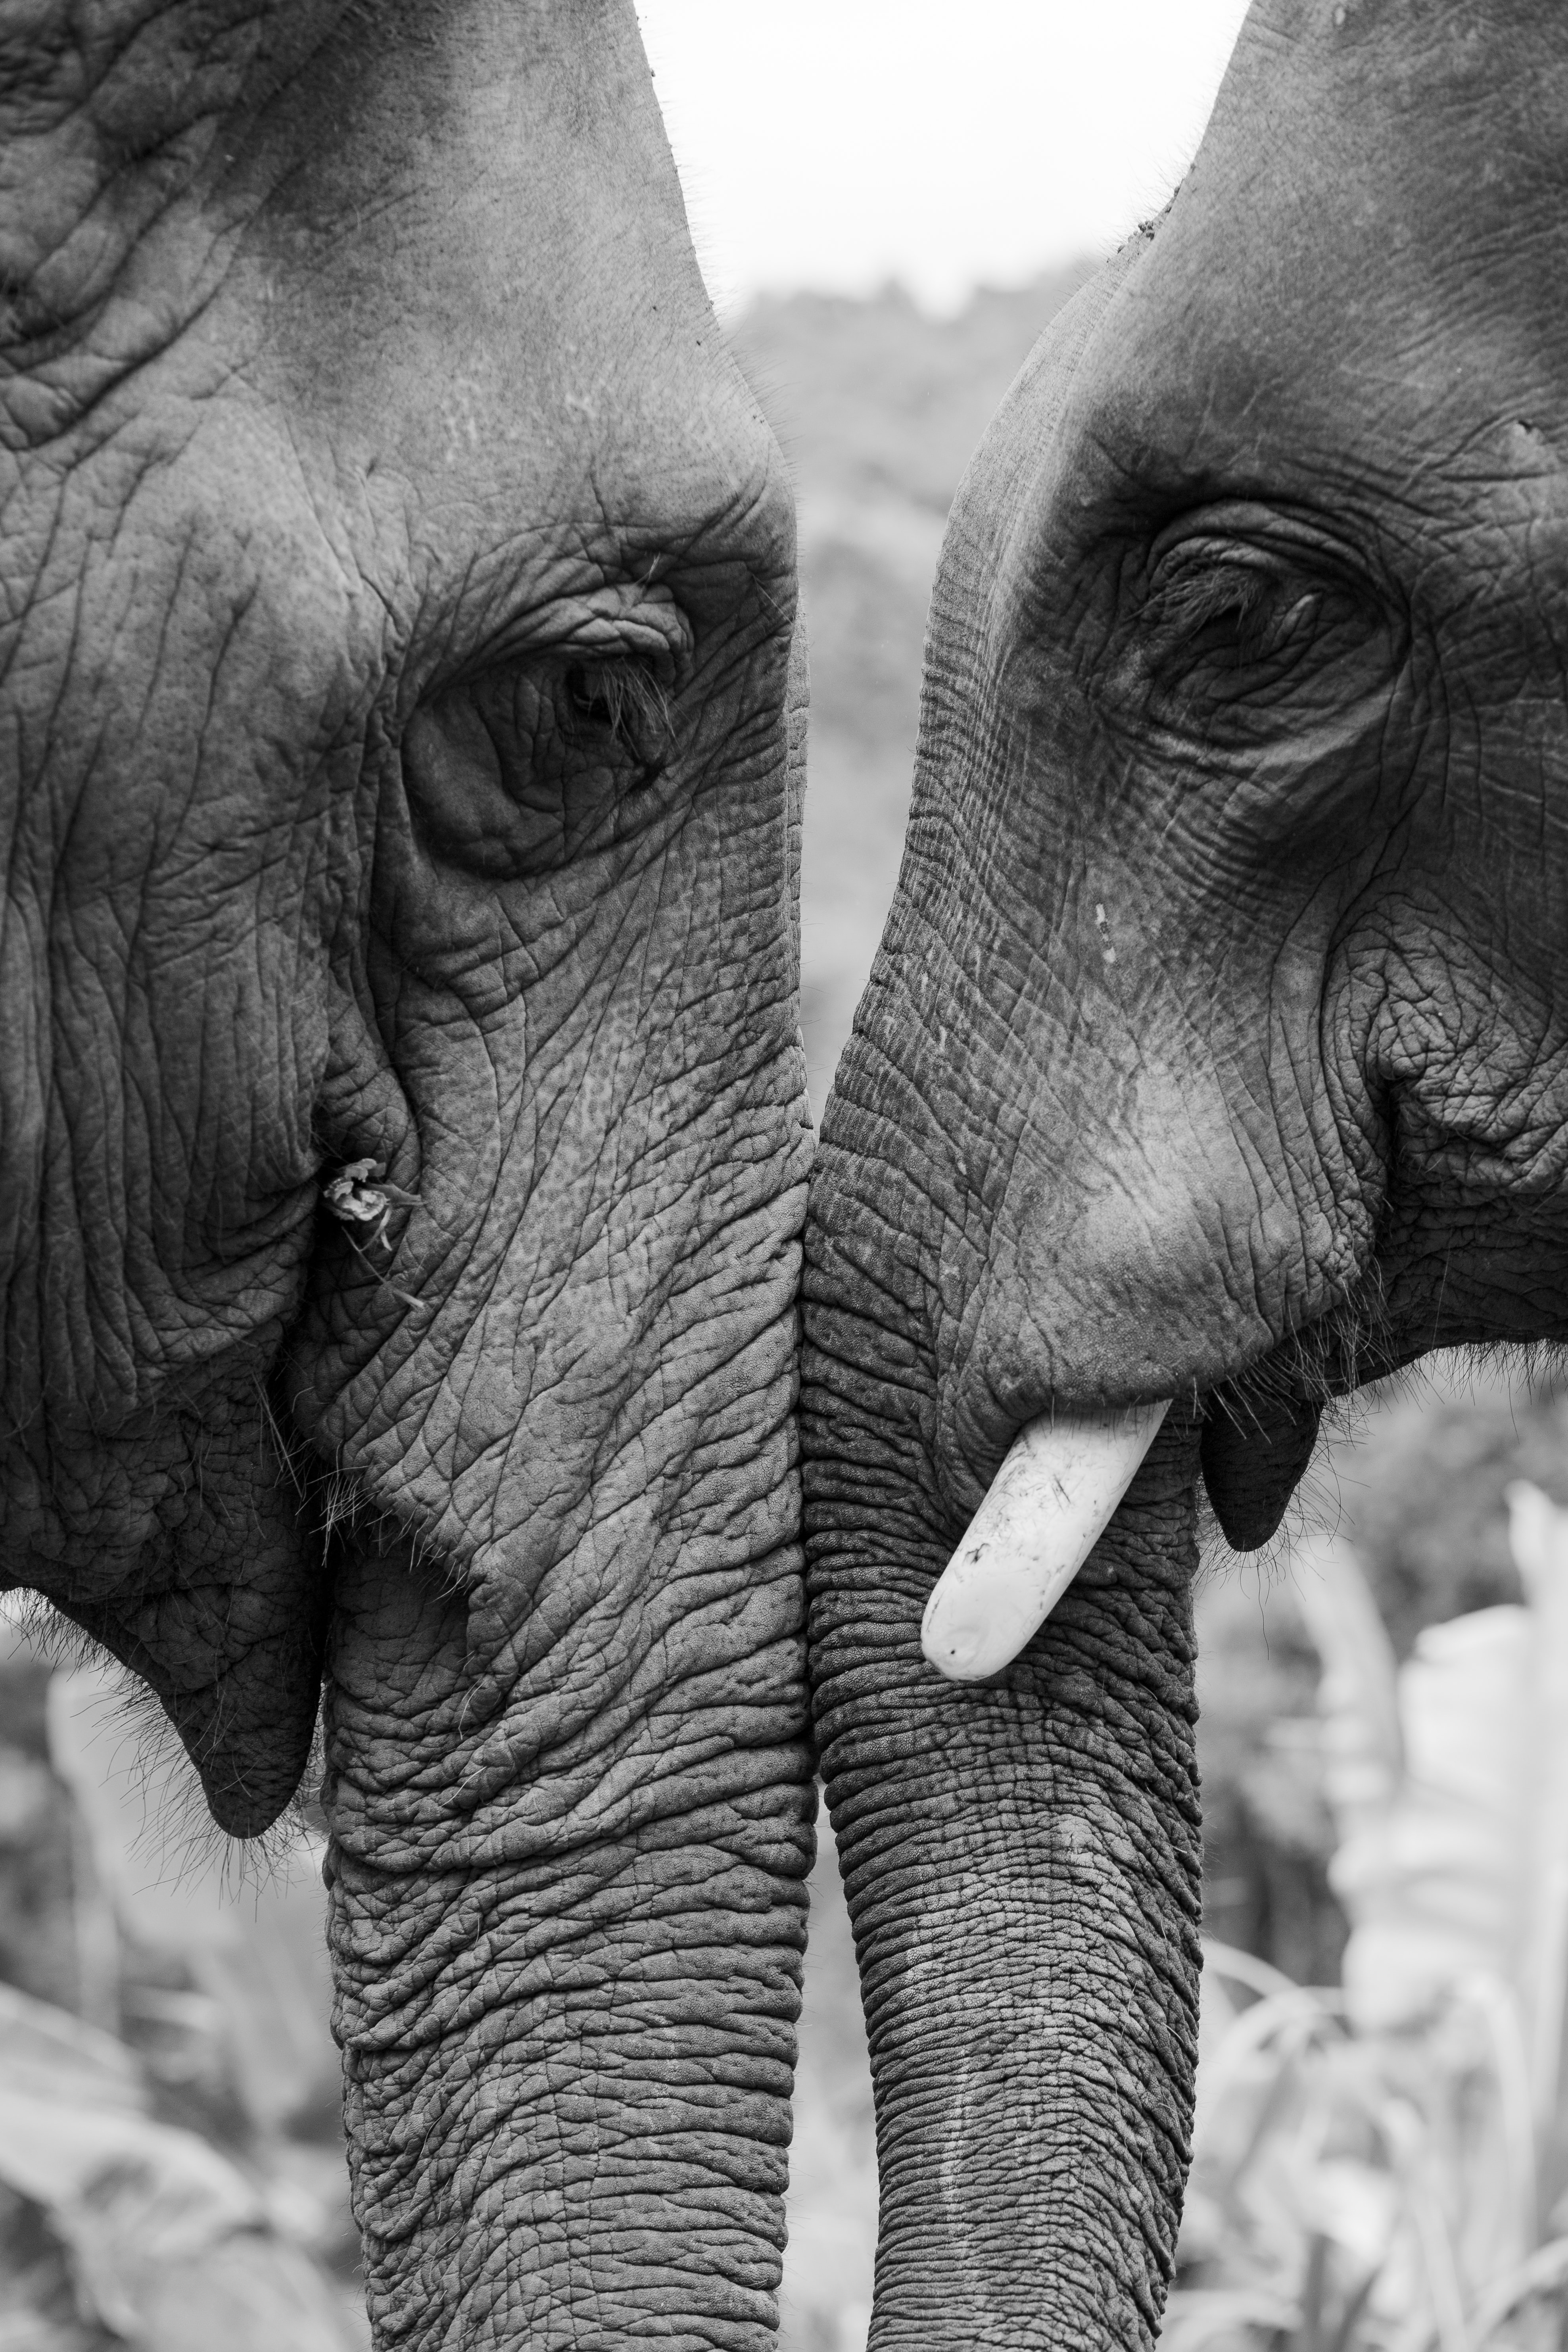 Скачать обои Слоны на телефон бесплатно